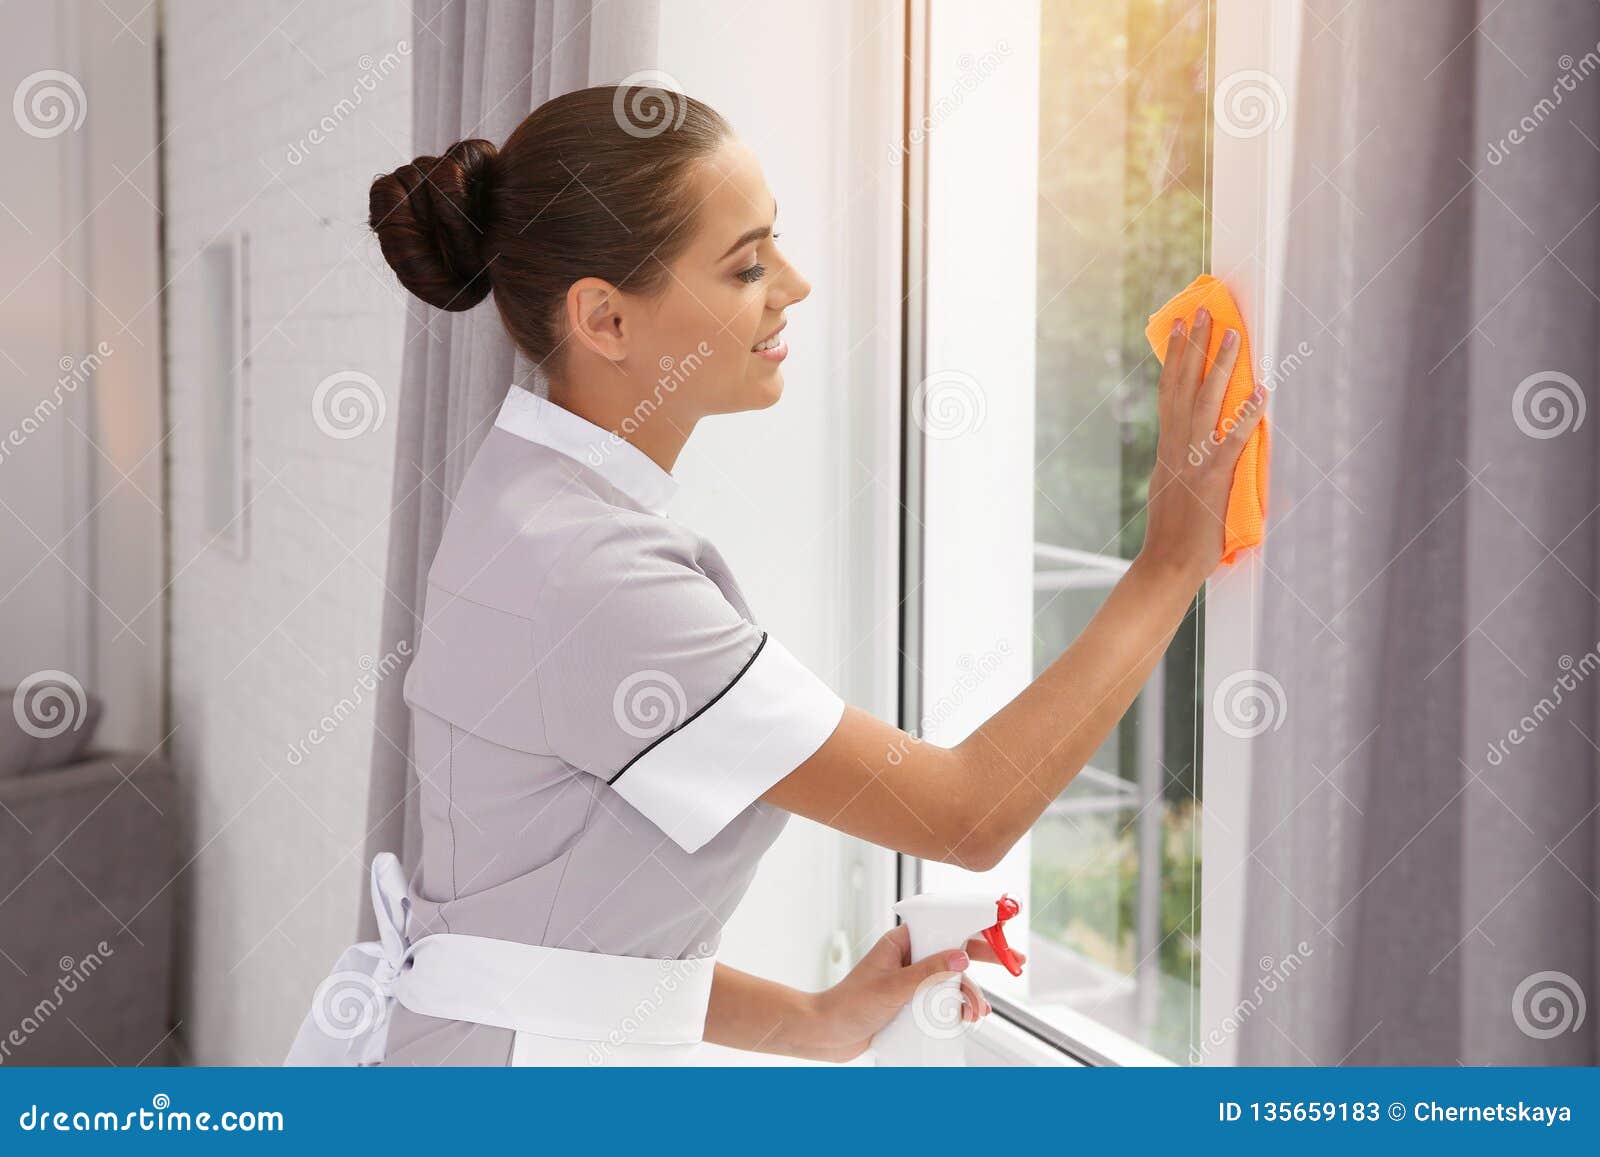 Чистка рядом со мной. Протирка окна. Женщина вытирает окно. Женщина протирает окно. Чистка окон.